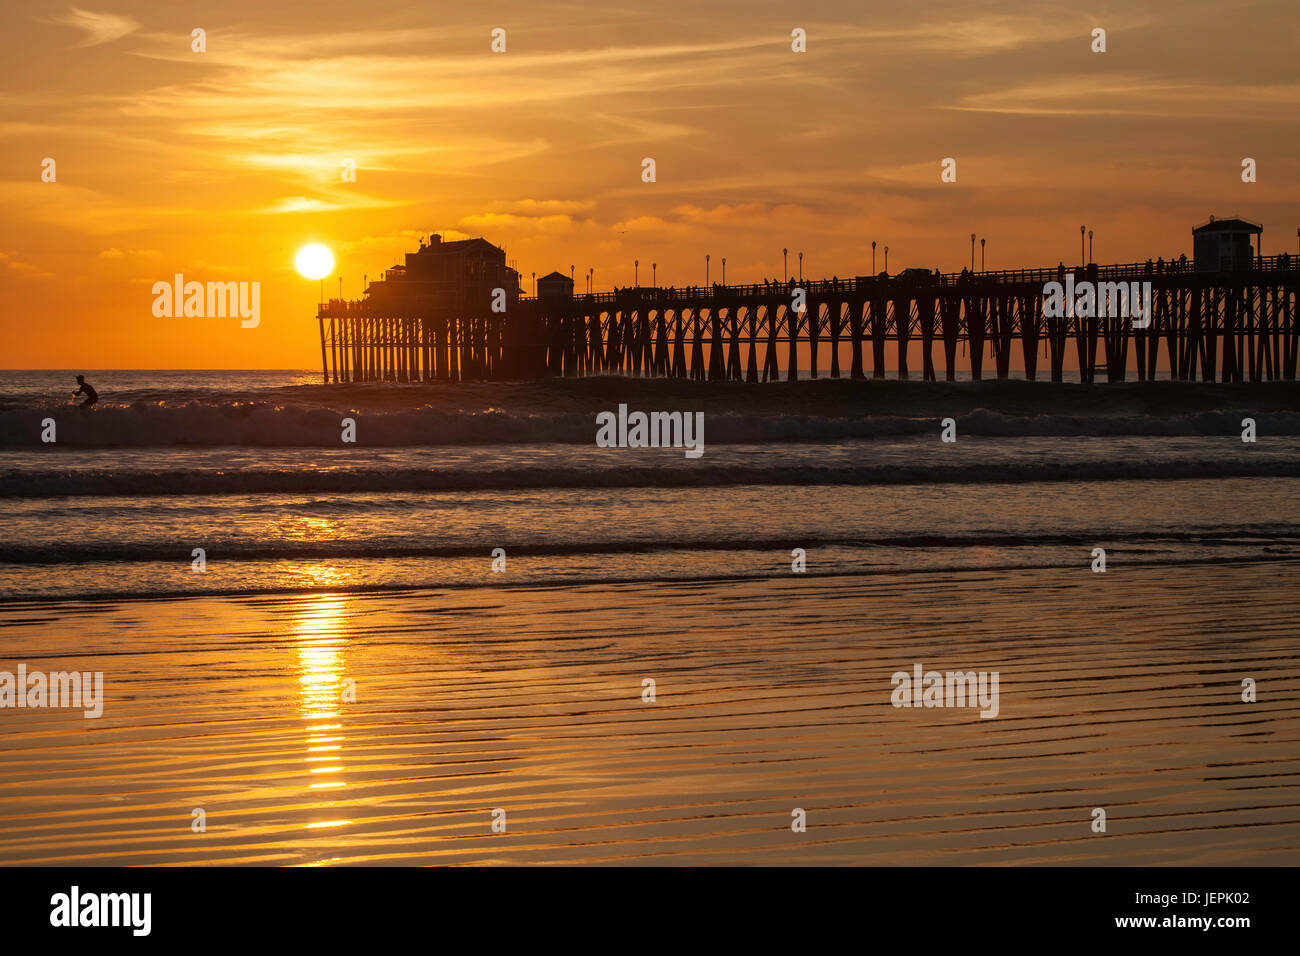 Sunset at Oceanside Pier, Oceanside, California Stock Photo - Alamy